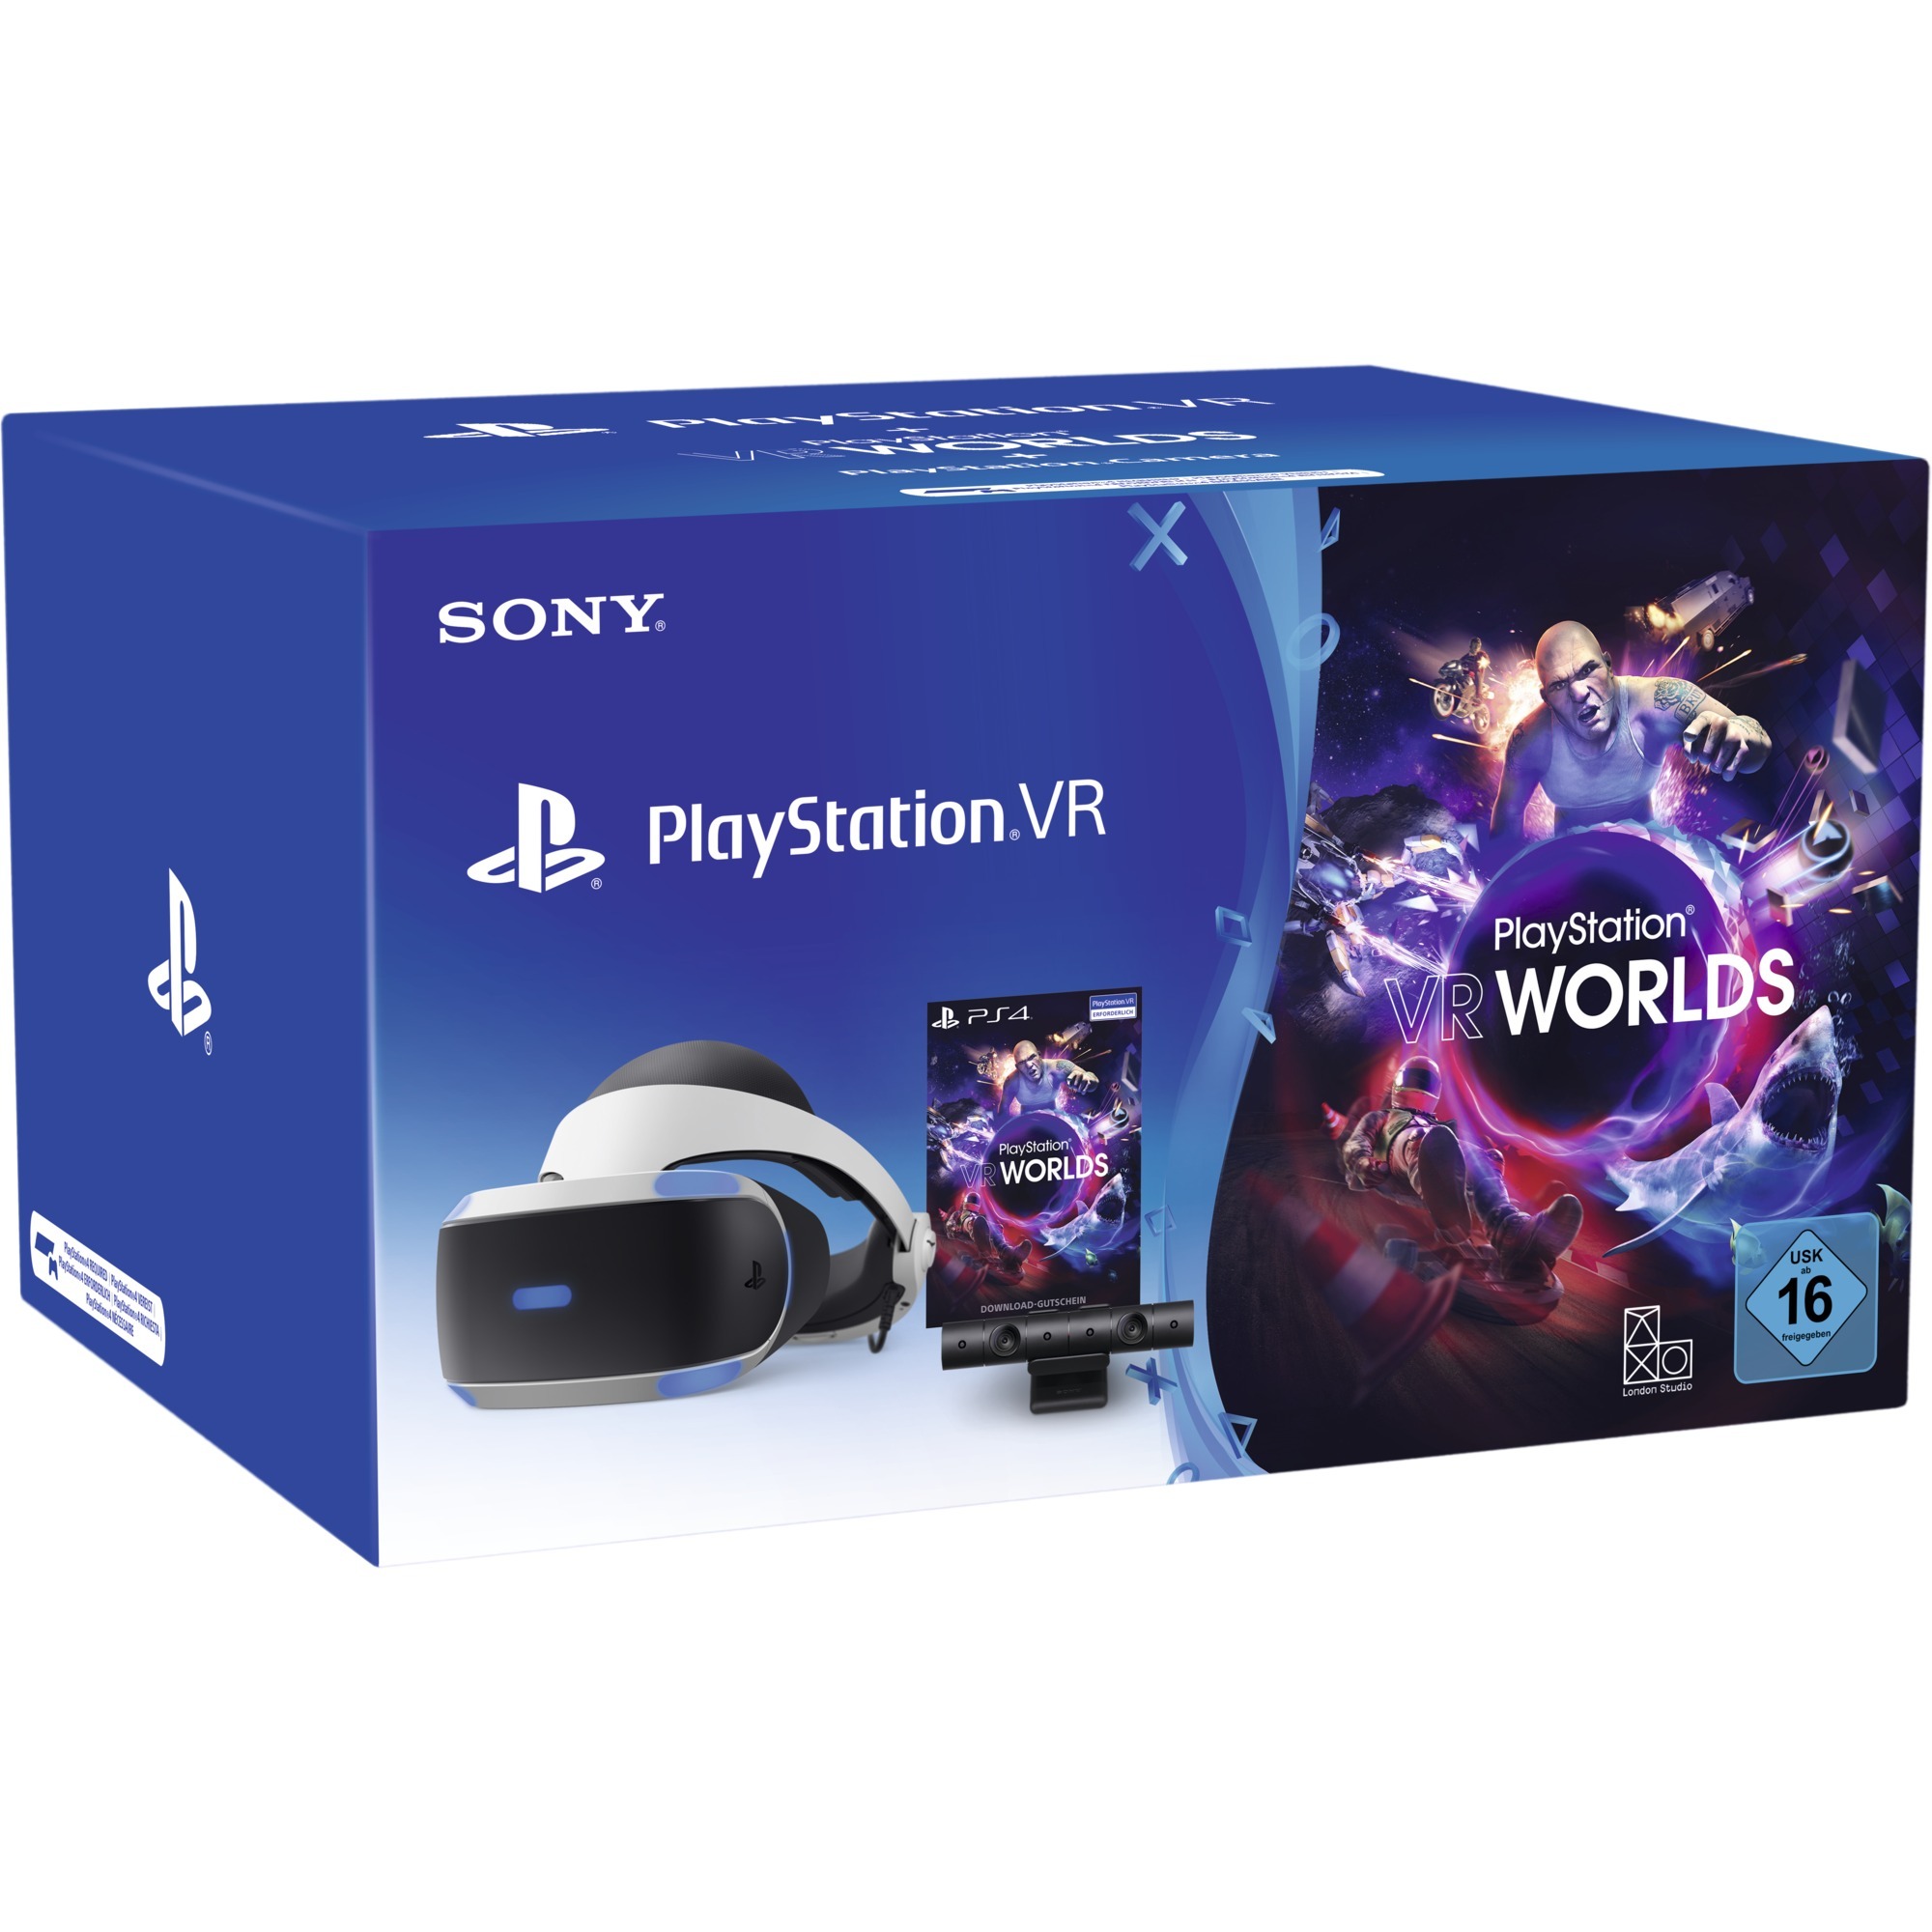 PlayStation VR + Camera + VR Worlds Voucher Dedykowany wy?wietlacz montowany na g?owie Czarny, Bia?y 610 g, Okulary VR